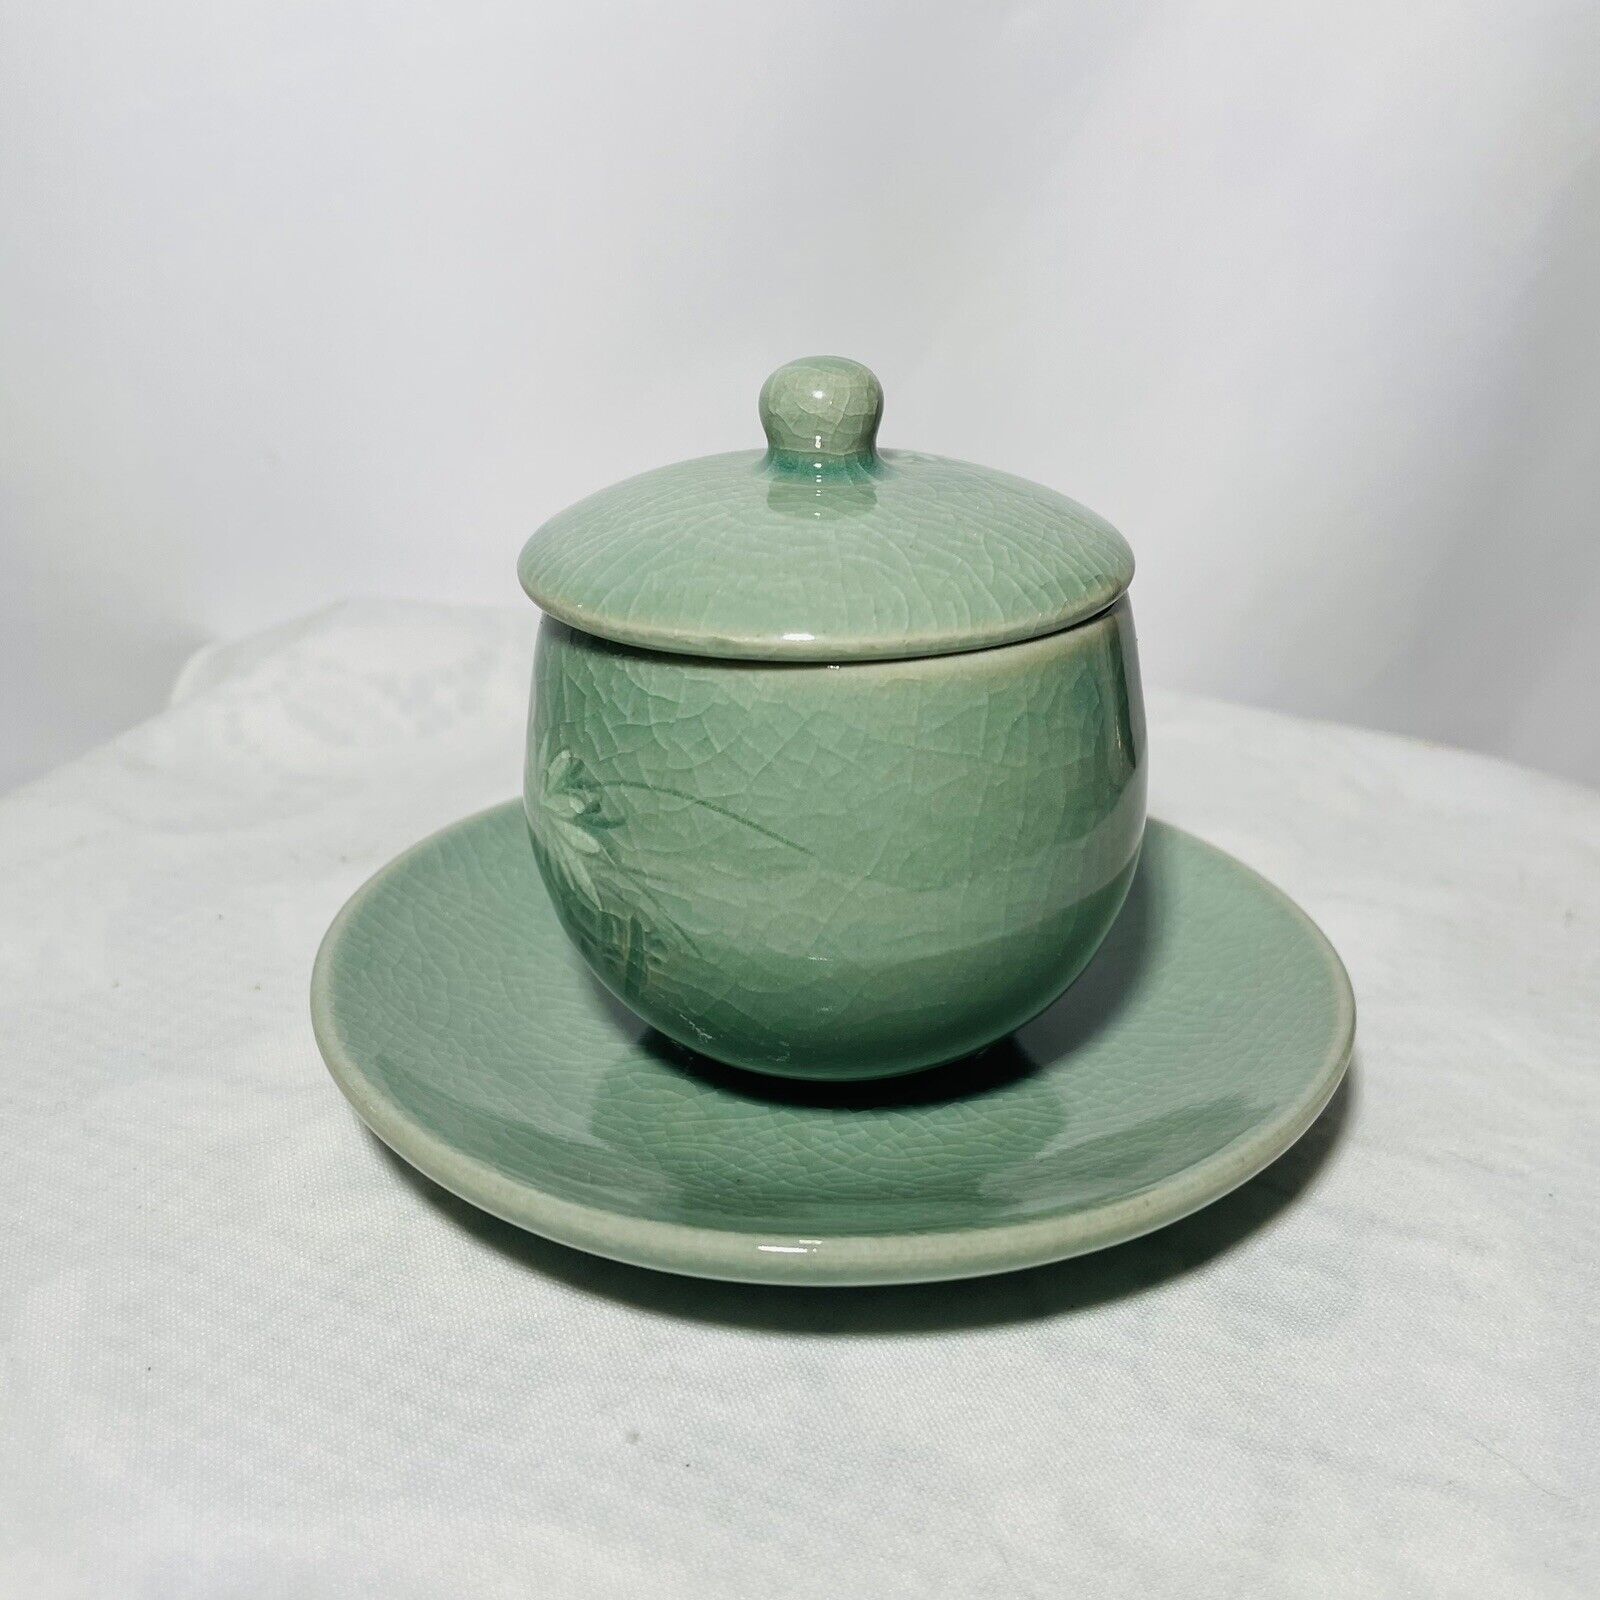 Vintage Korean Celadon Crackle Glaze Lotus Flower Covered Tea Cup and Saucer Set